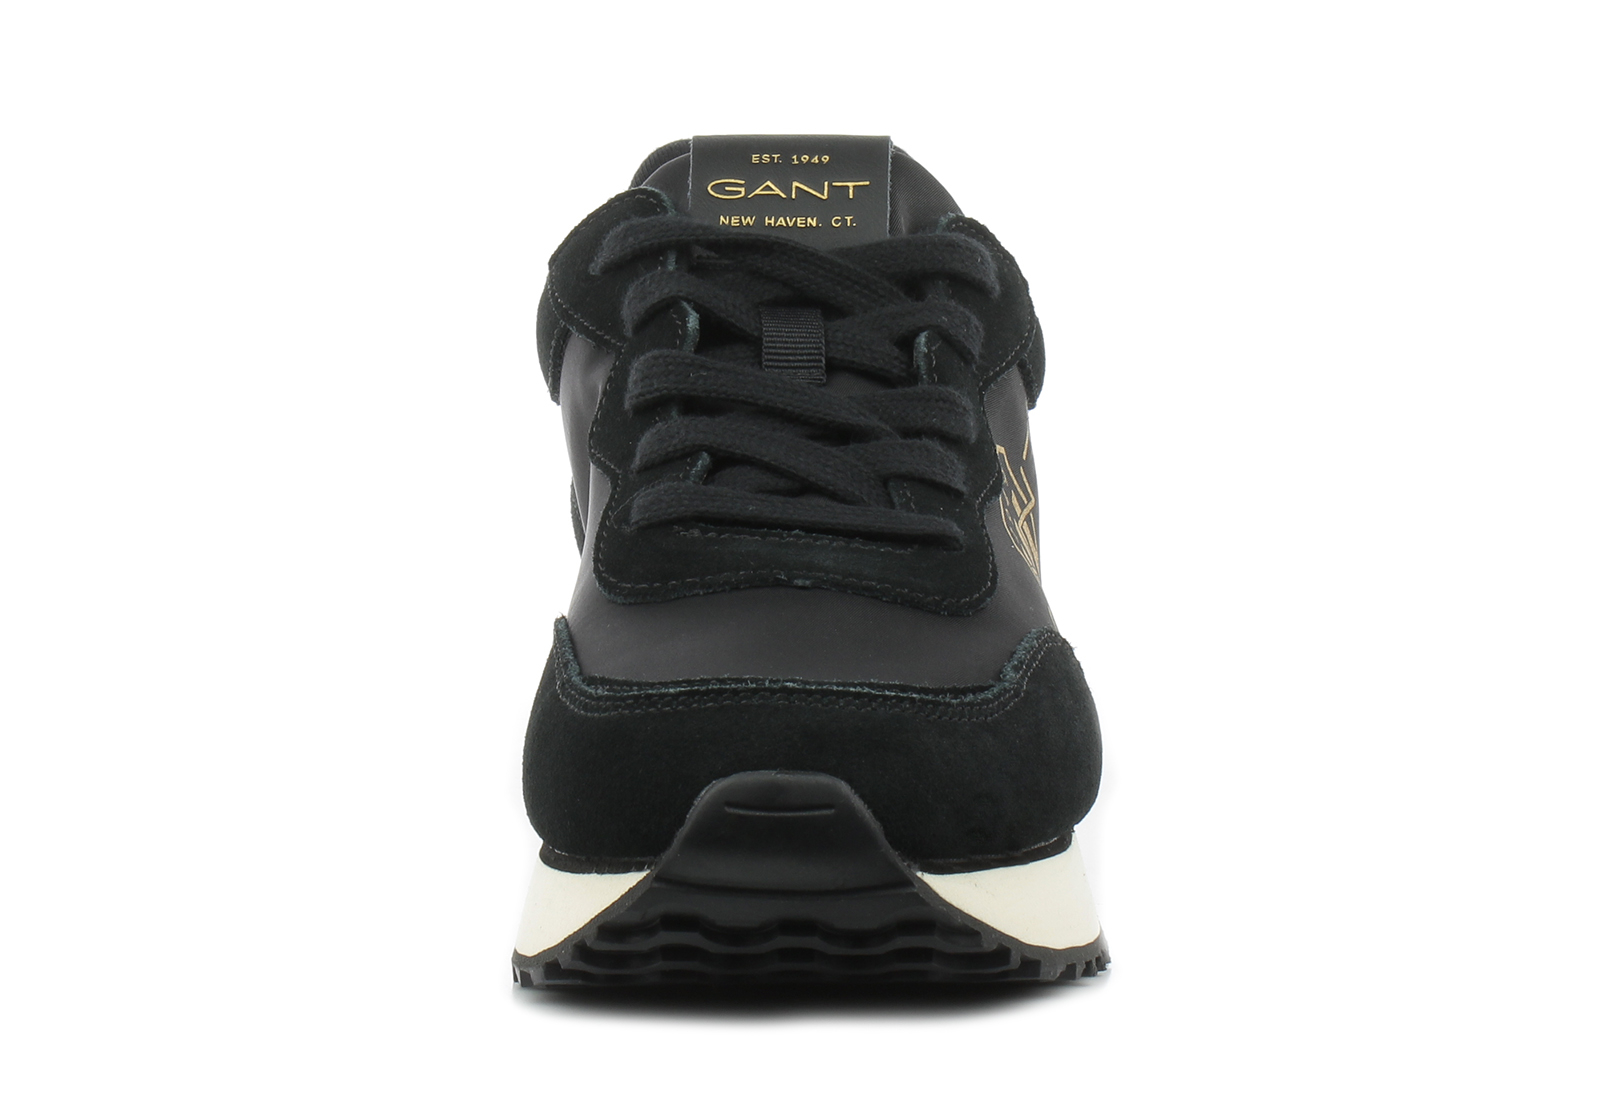 Gant Casual Crna Plitke patike - Bevinda - Office Shoes - Online ...